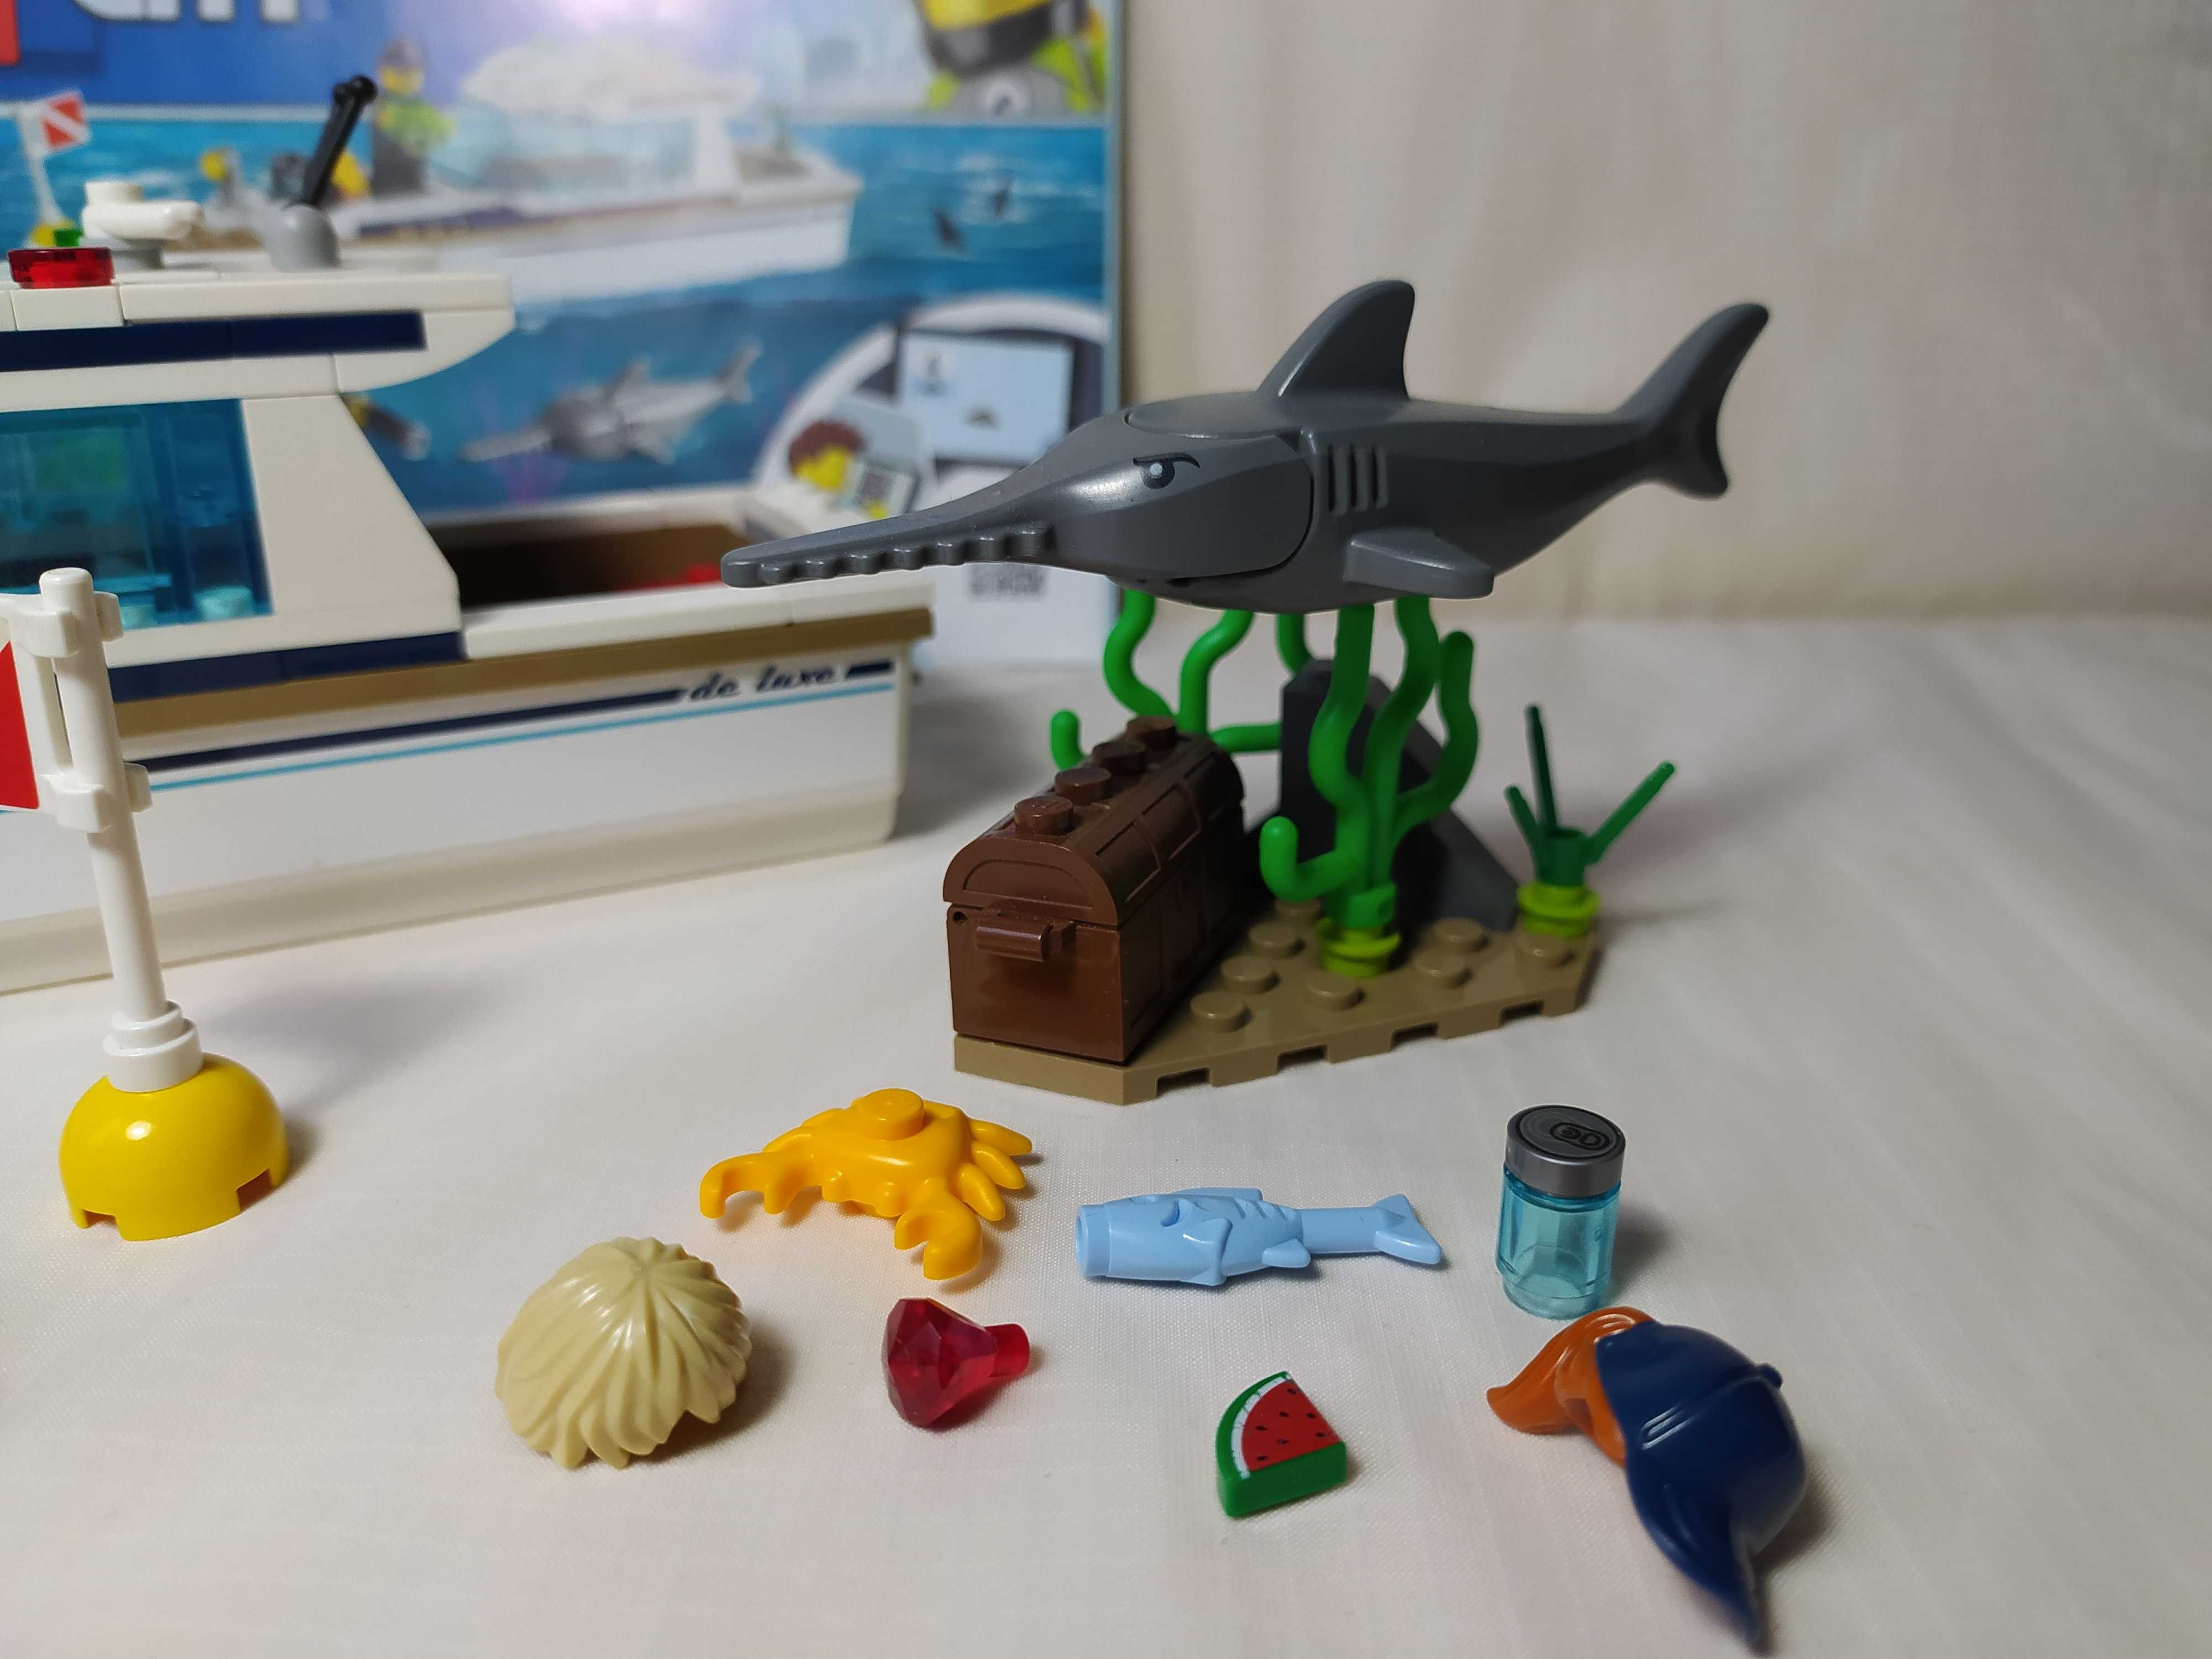 Oryginalny i kompletny zestaw Lego City 60221 Jacht Płetwonurków